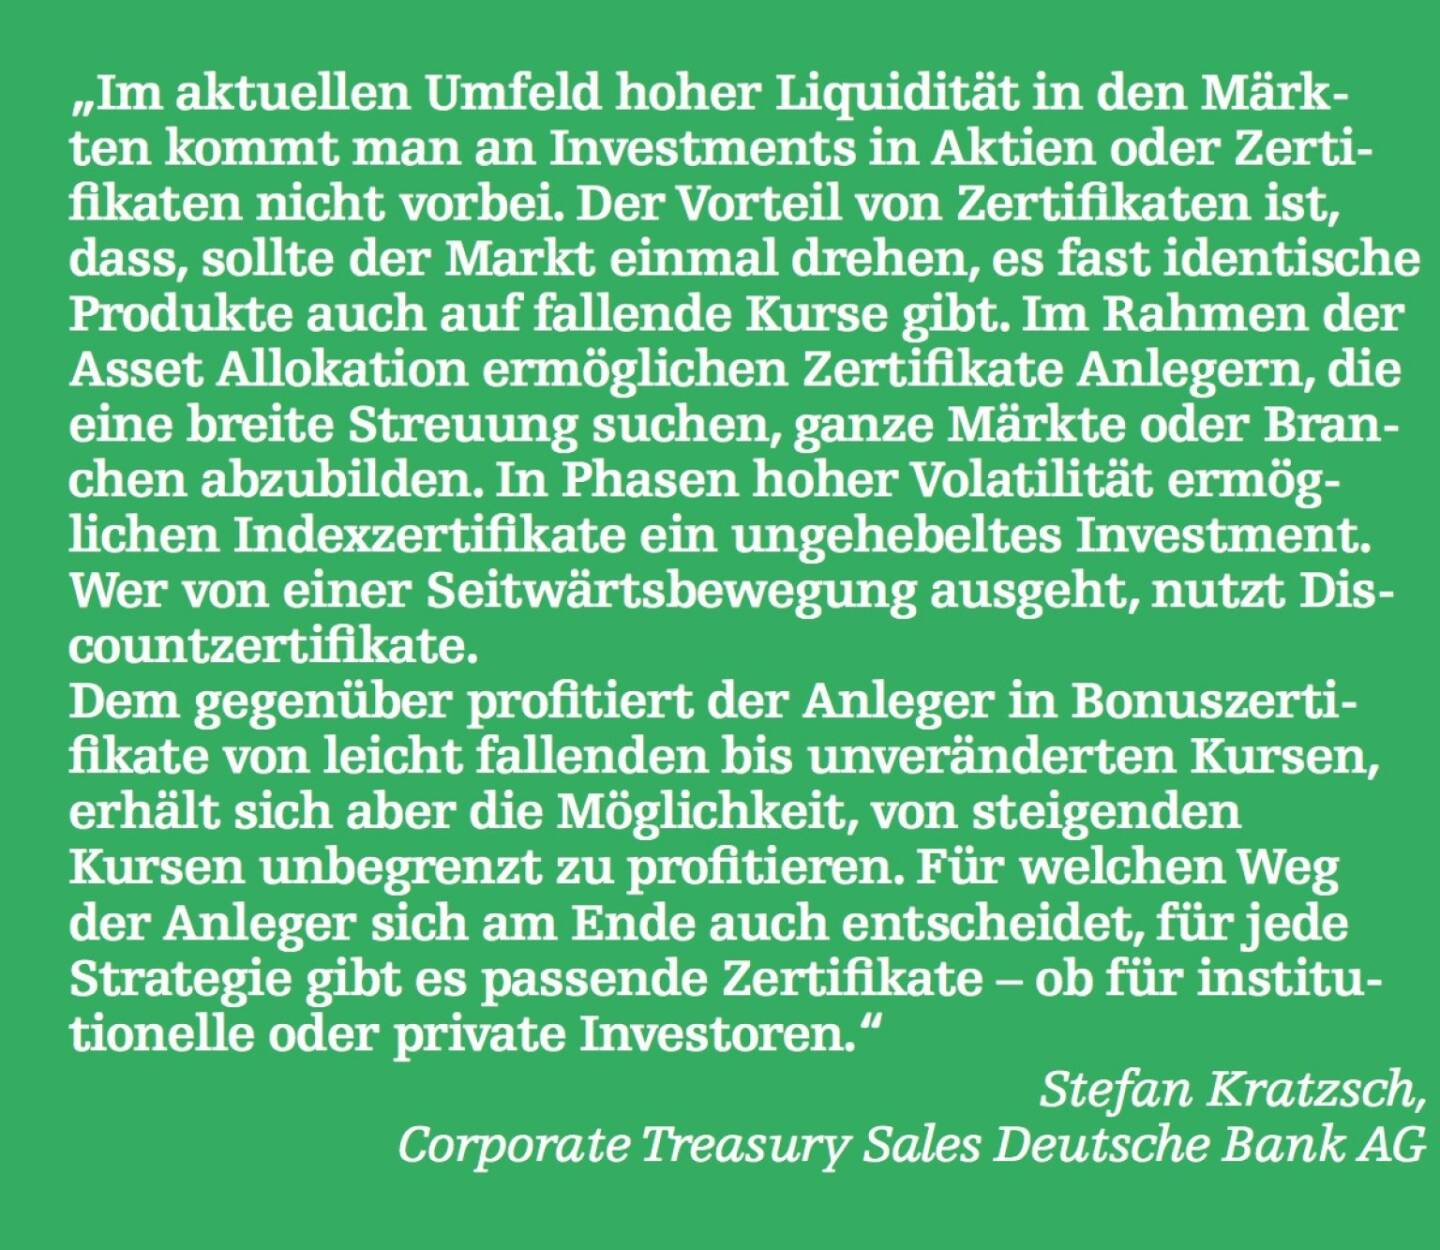 Stefan Kratzsch, Corporate Treasury Sales Deutsche Bank AG